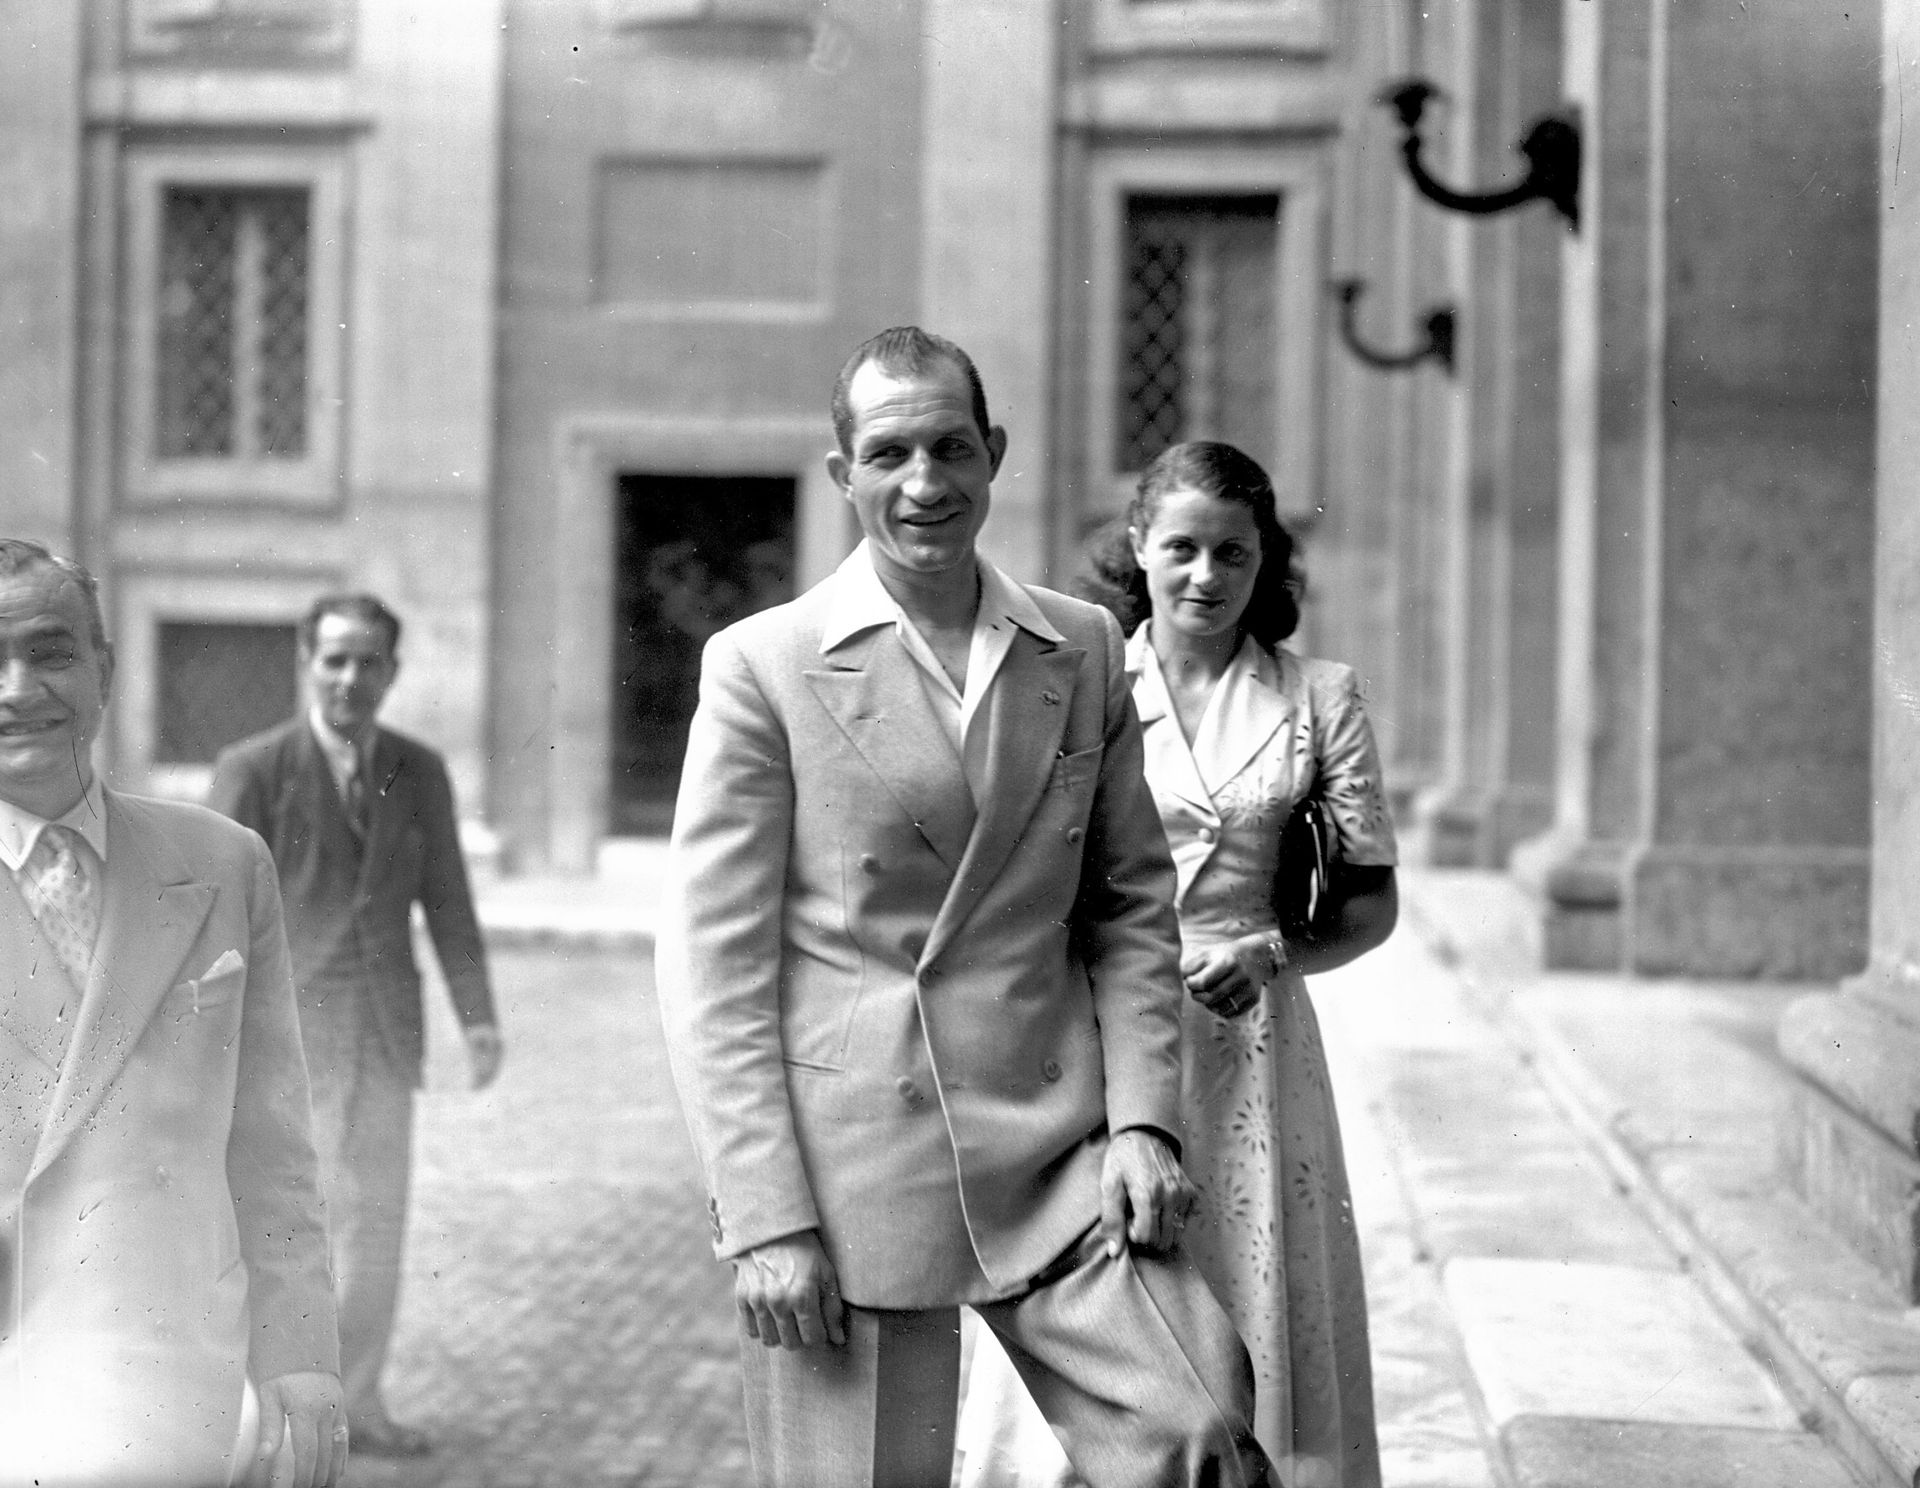 Gino et son épouse Adriana Bani reçus au palais du Quirinal à Rome, en 1948 : sa victoire au Tour de France de cette année-là a évité une révolution en Italie.